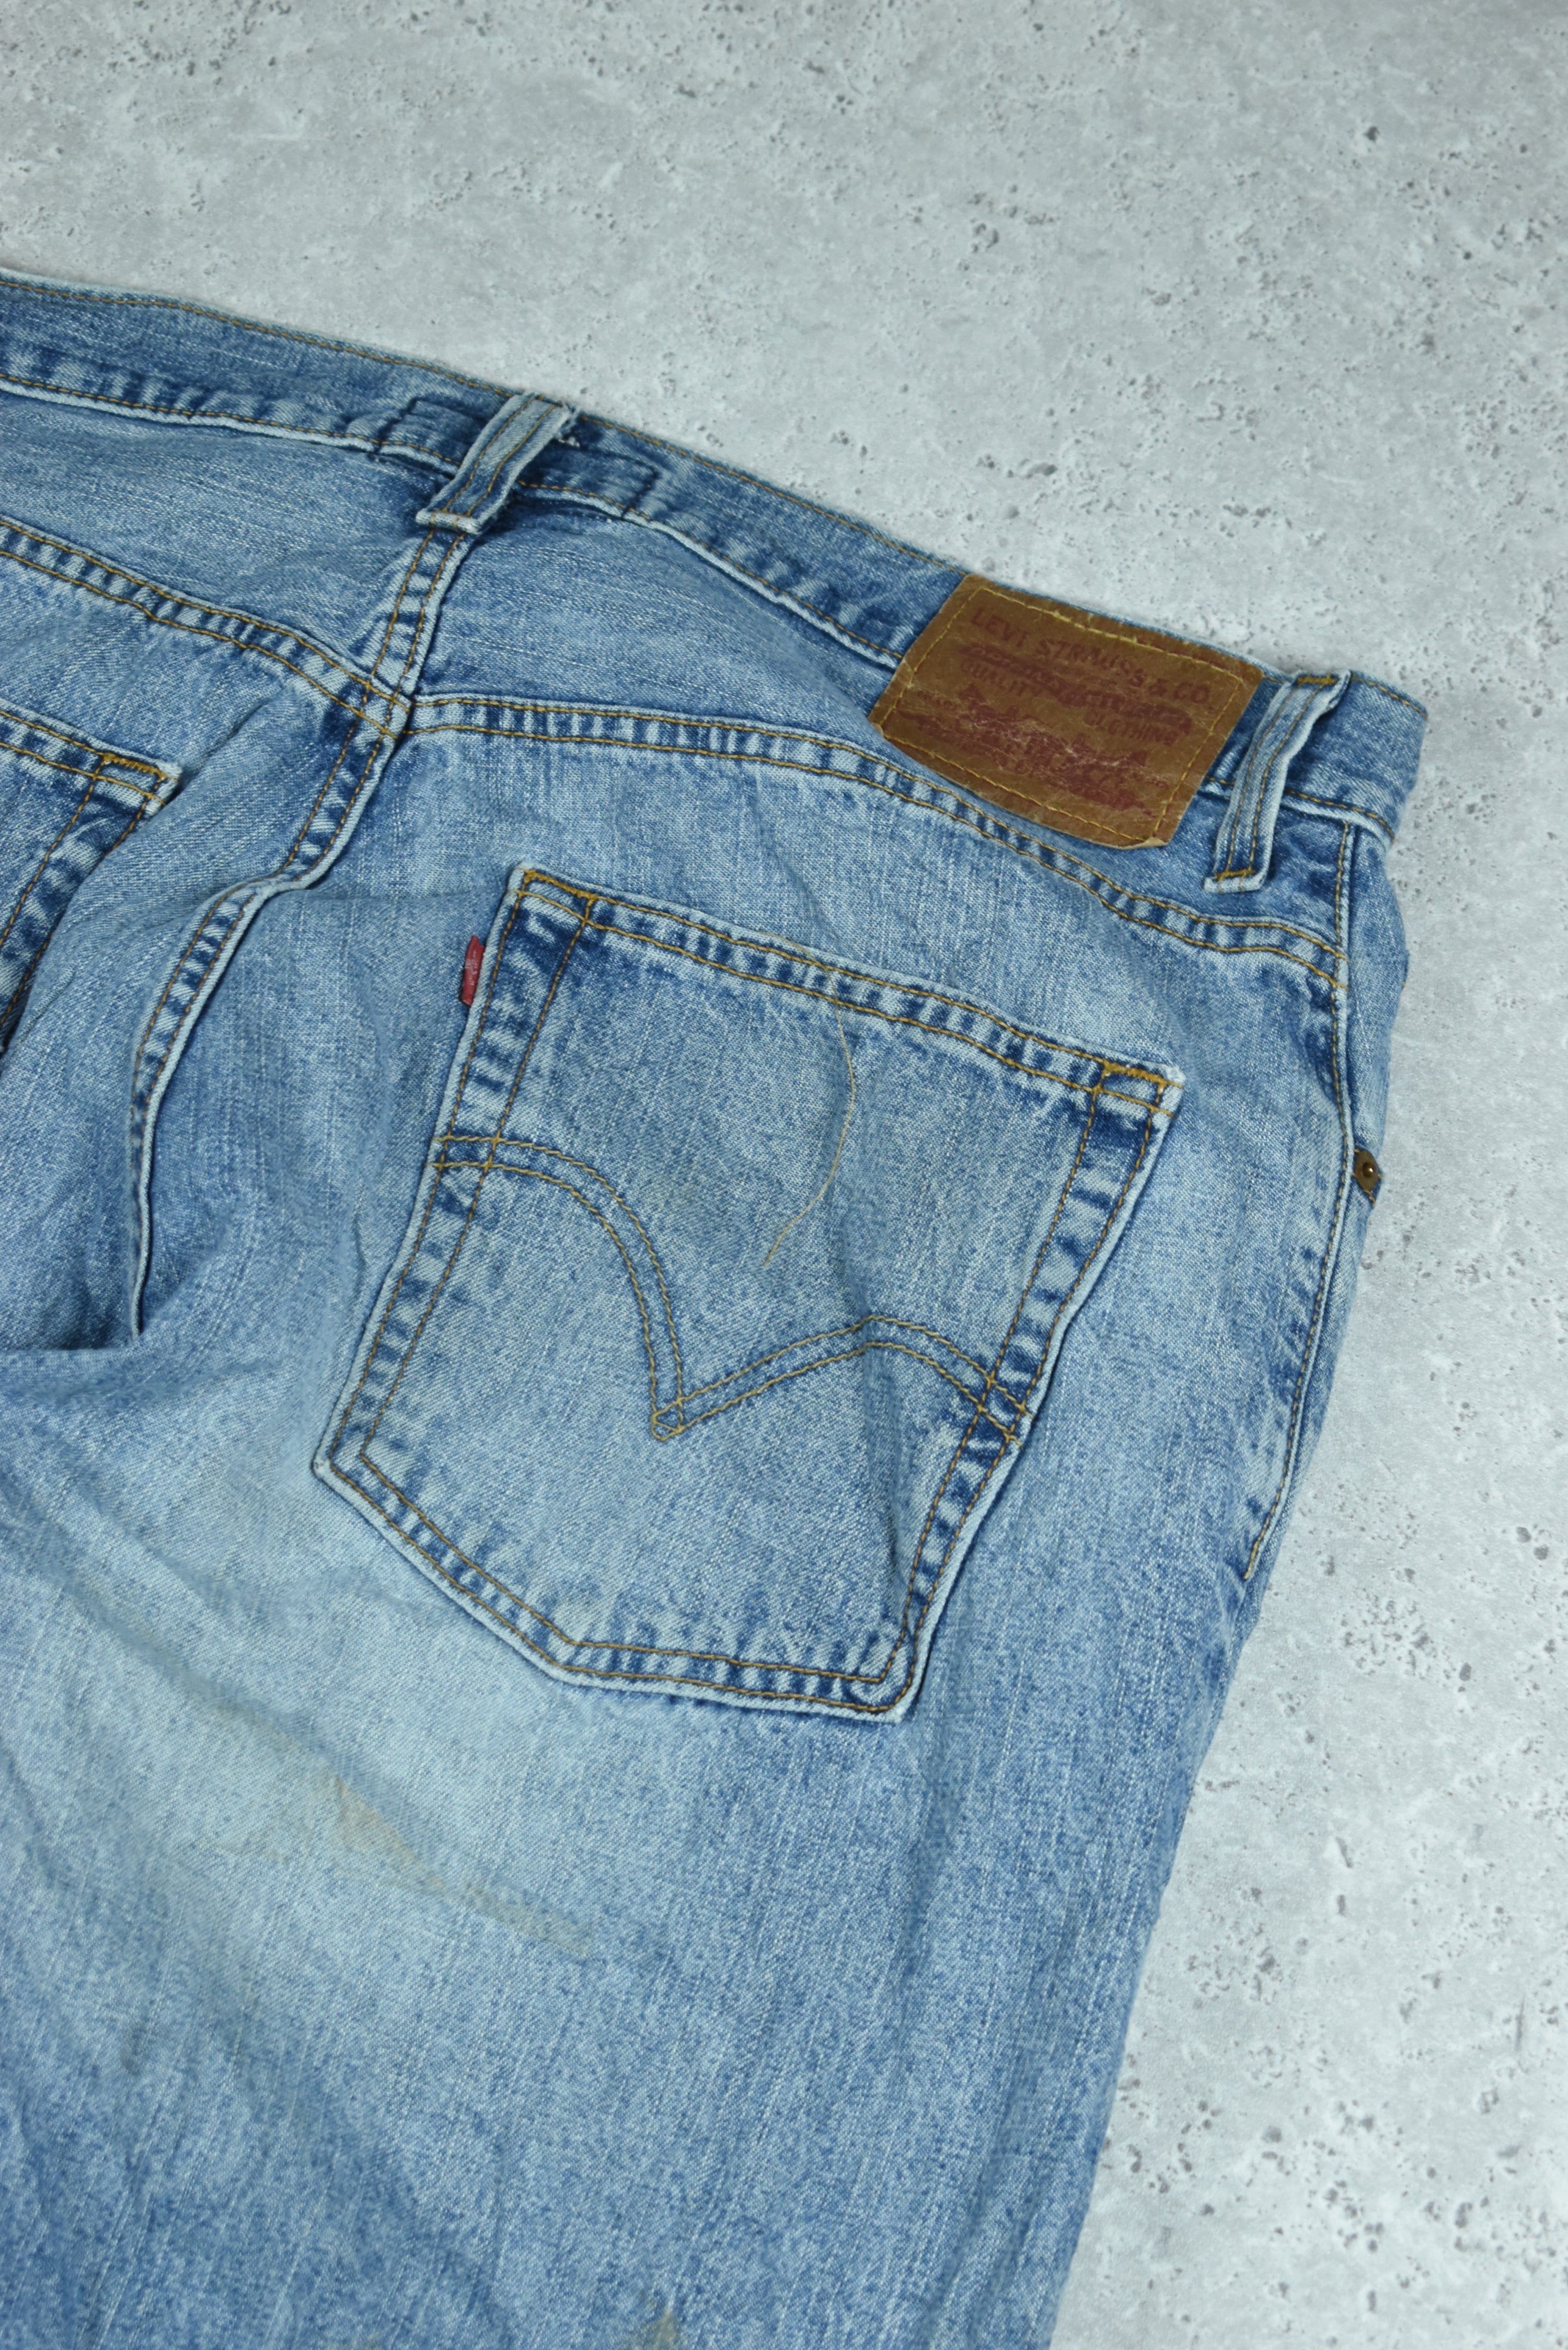 Vintage Levis 569 Denim Jeans 36x30